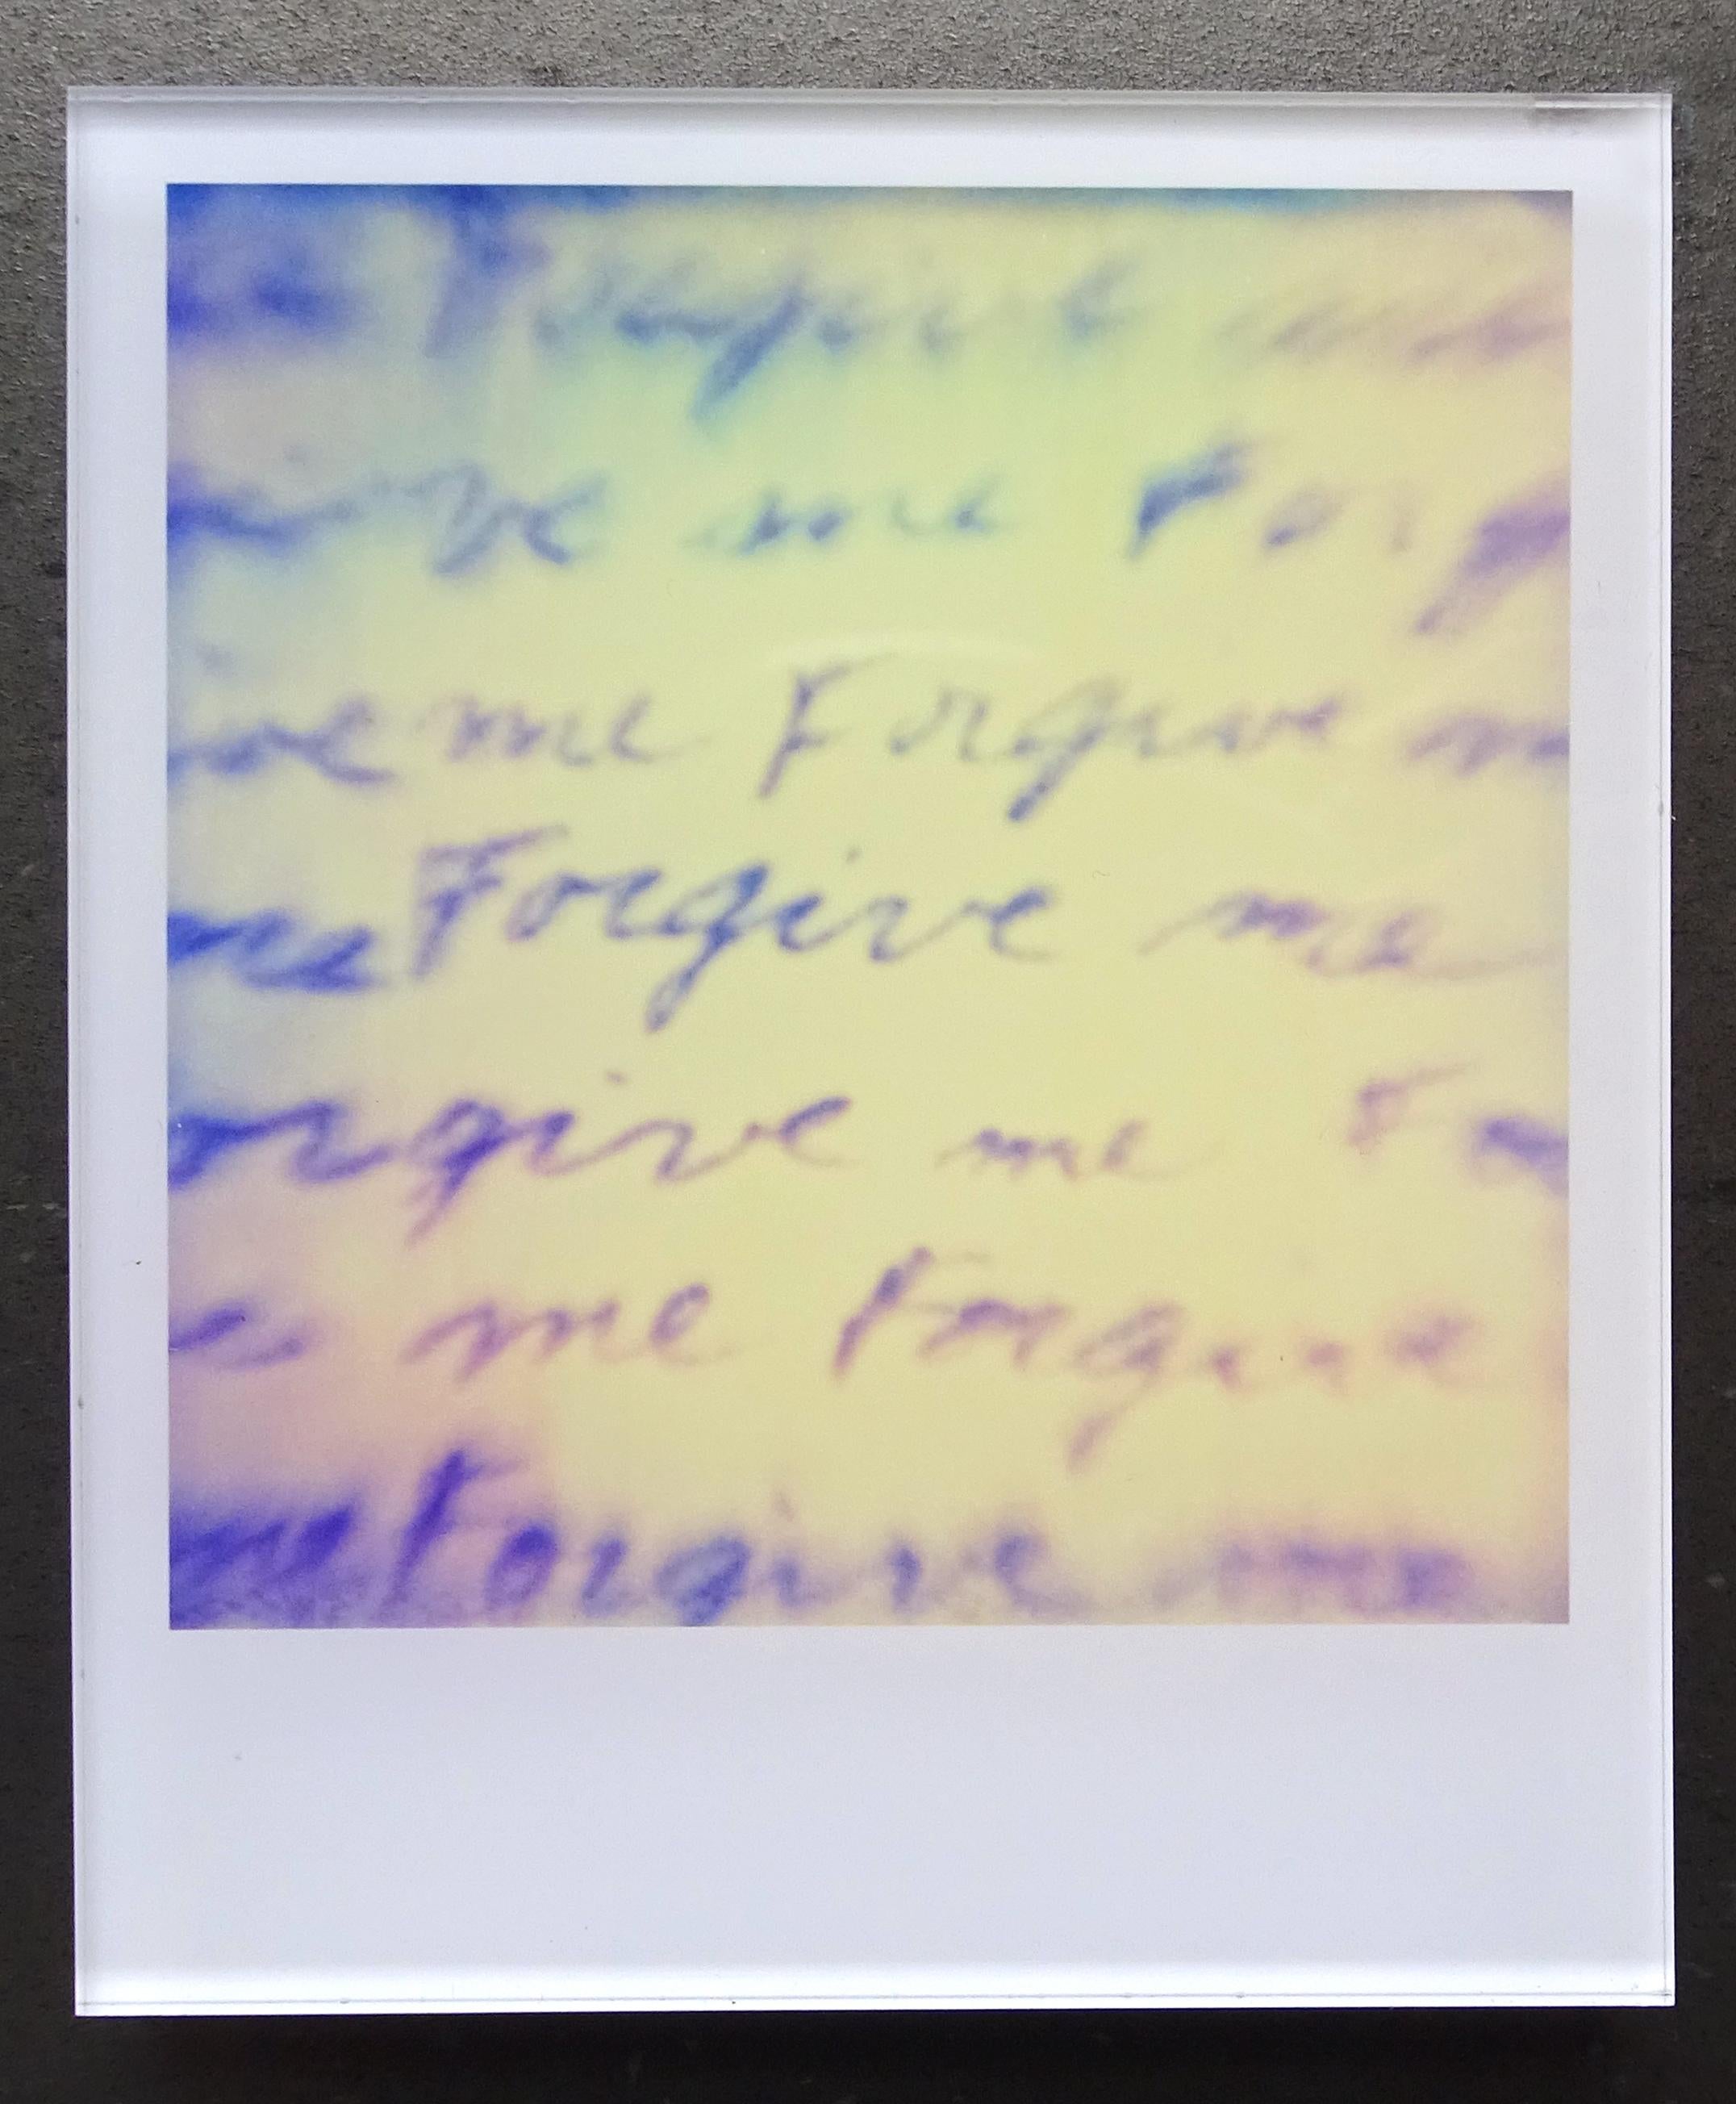 Die Minis von Stefanie Schneider
Coney Island (Aufenthalt), 2006

Verso signiert und Signaturmarke.
Digitale Lambda-Farbfotografien auf Basis der Polaroid.
Eingeklemmt zwischen Plexiglas (Dicke 0,7 cm)

aus dem Film 'Stay' von Marc Forster, mit Ewan